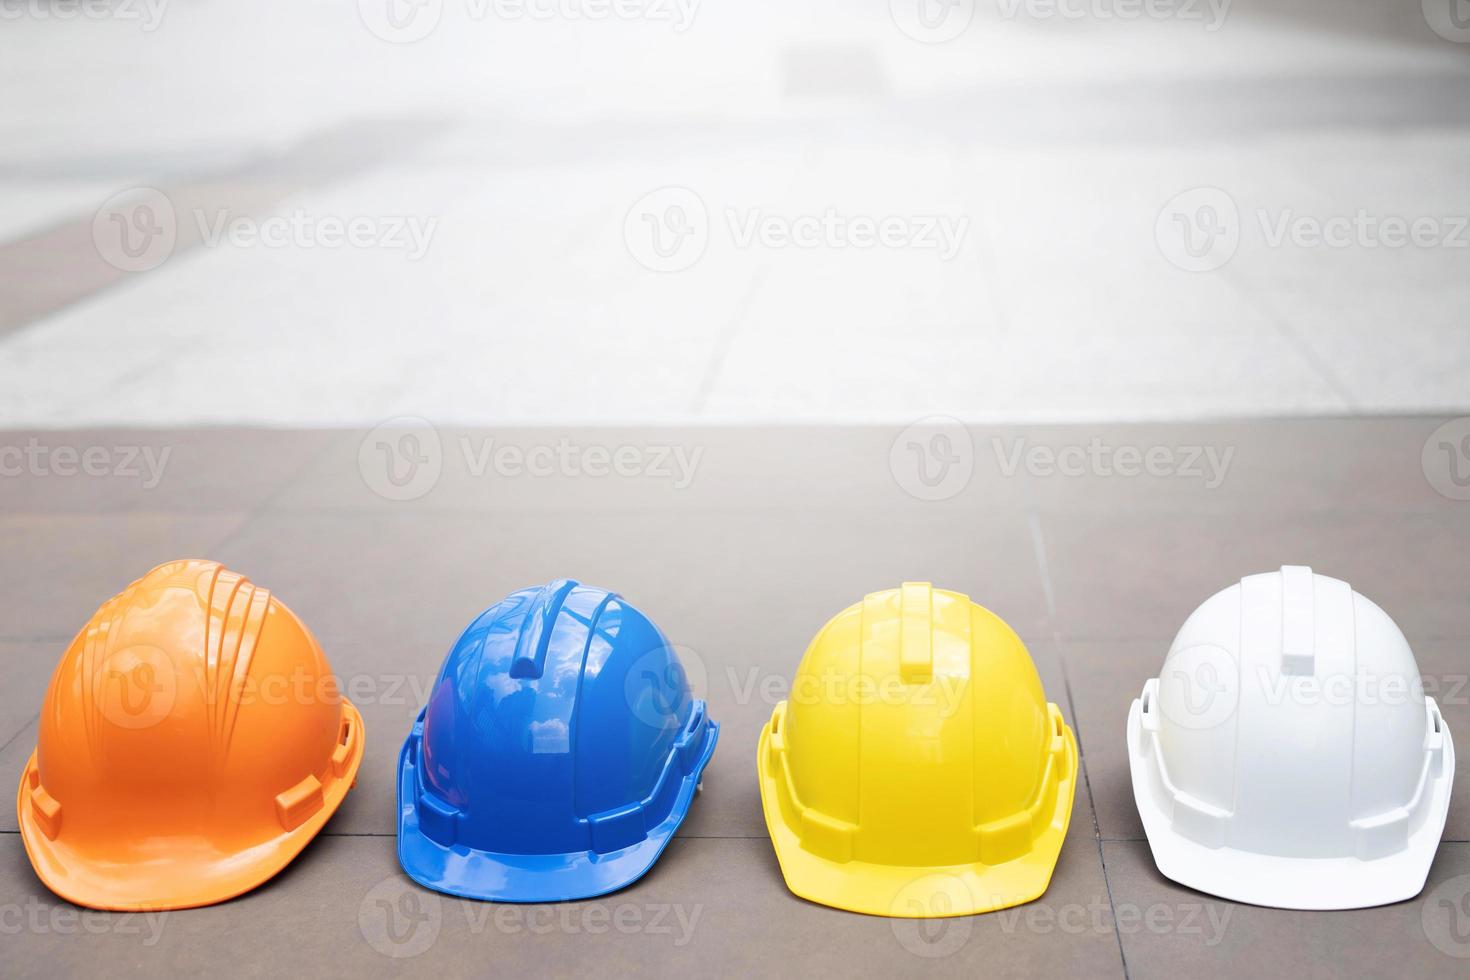 chapeau de casque de sécurité dur blanc, jaune et bleu pour le projet de sécurité d'un ouvrier en tant qu'ingénieur ou ouvrier, sur un sol en béton en ville. photo